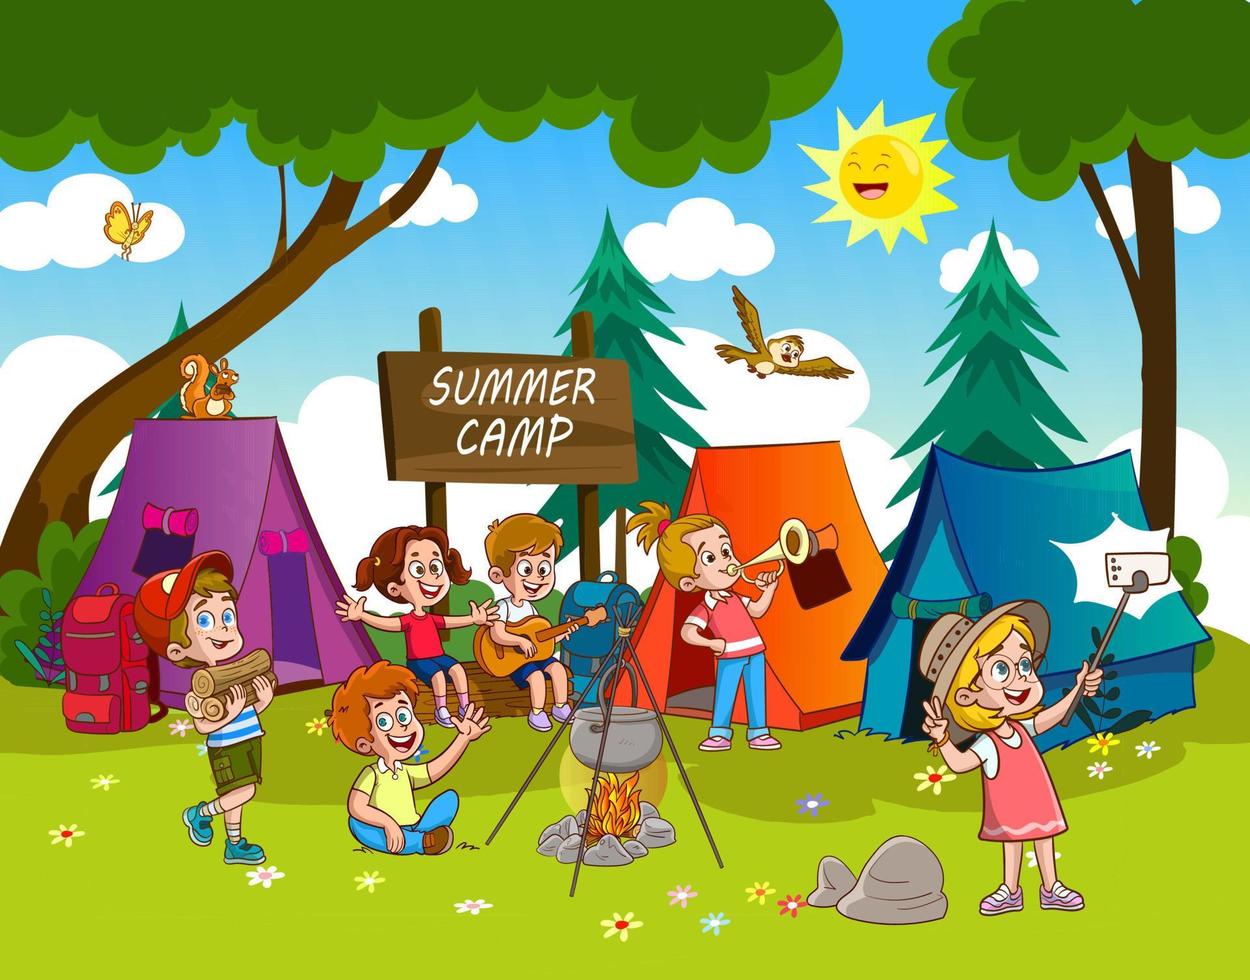 niños felices junto a la hoguera en el campamento de verano - niños tomando selfie de camping - ilustración vectorial, eps vector